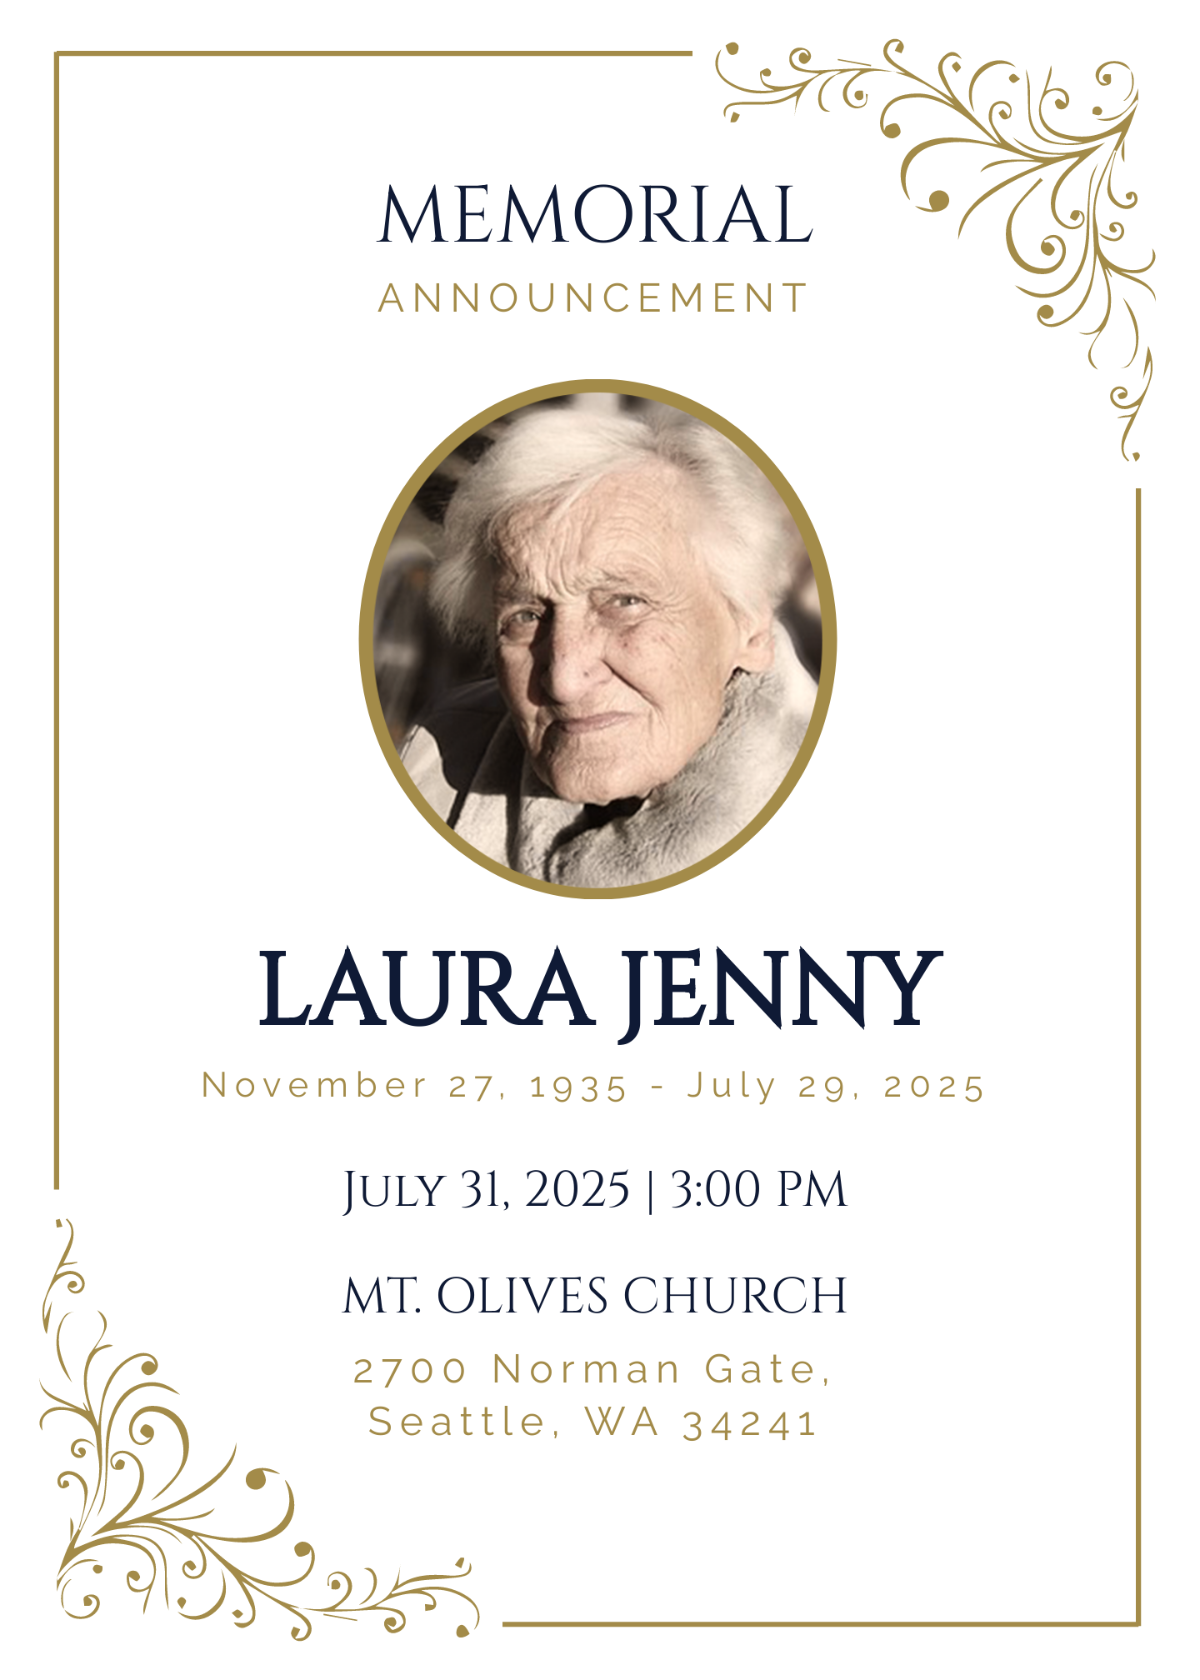 Memorial Announcement Invitation